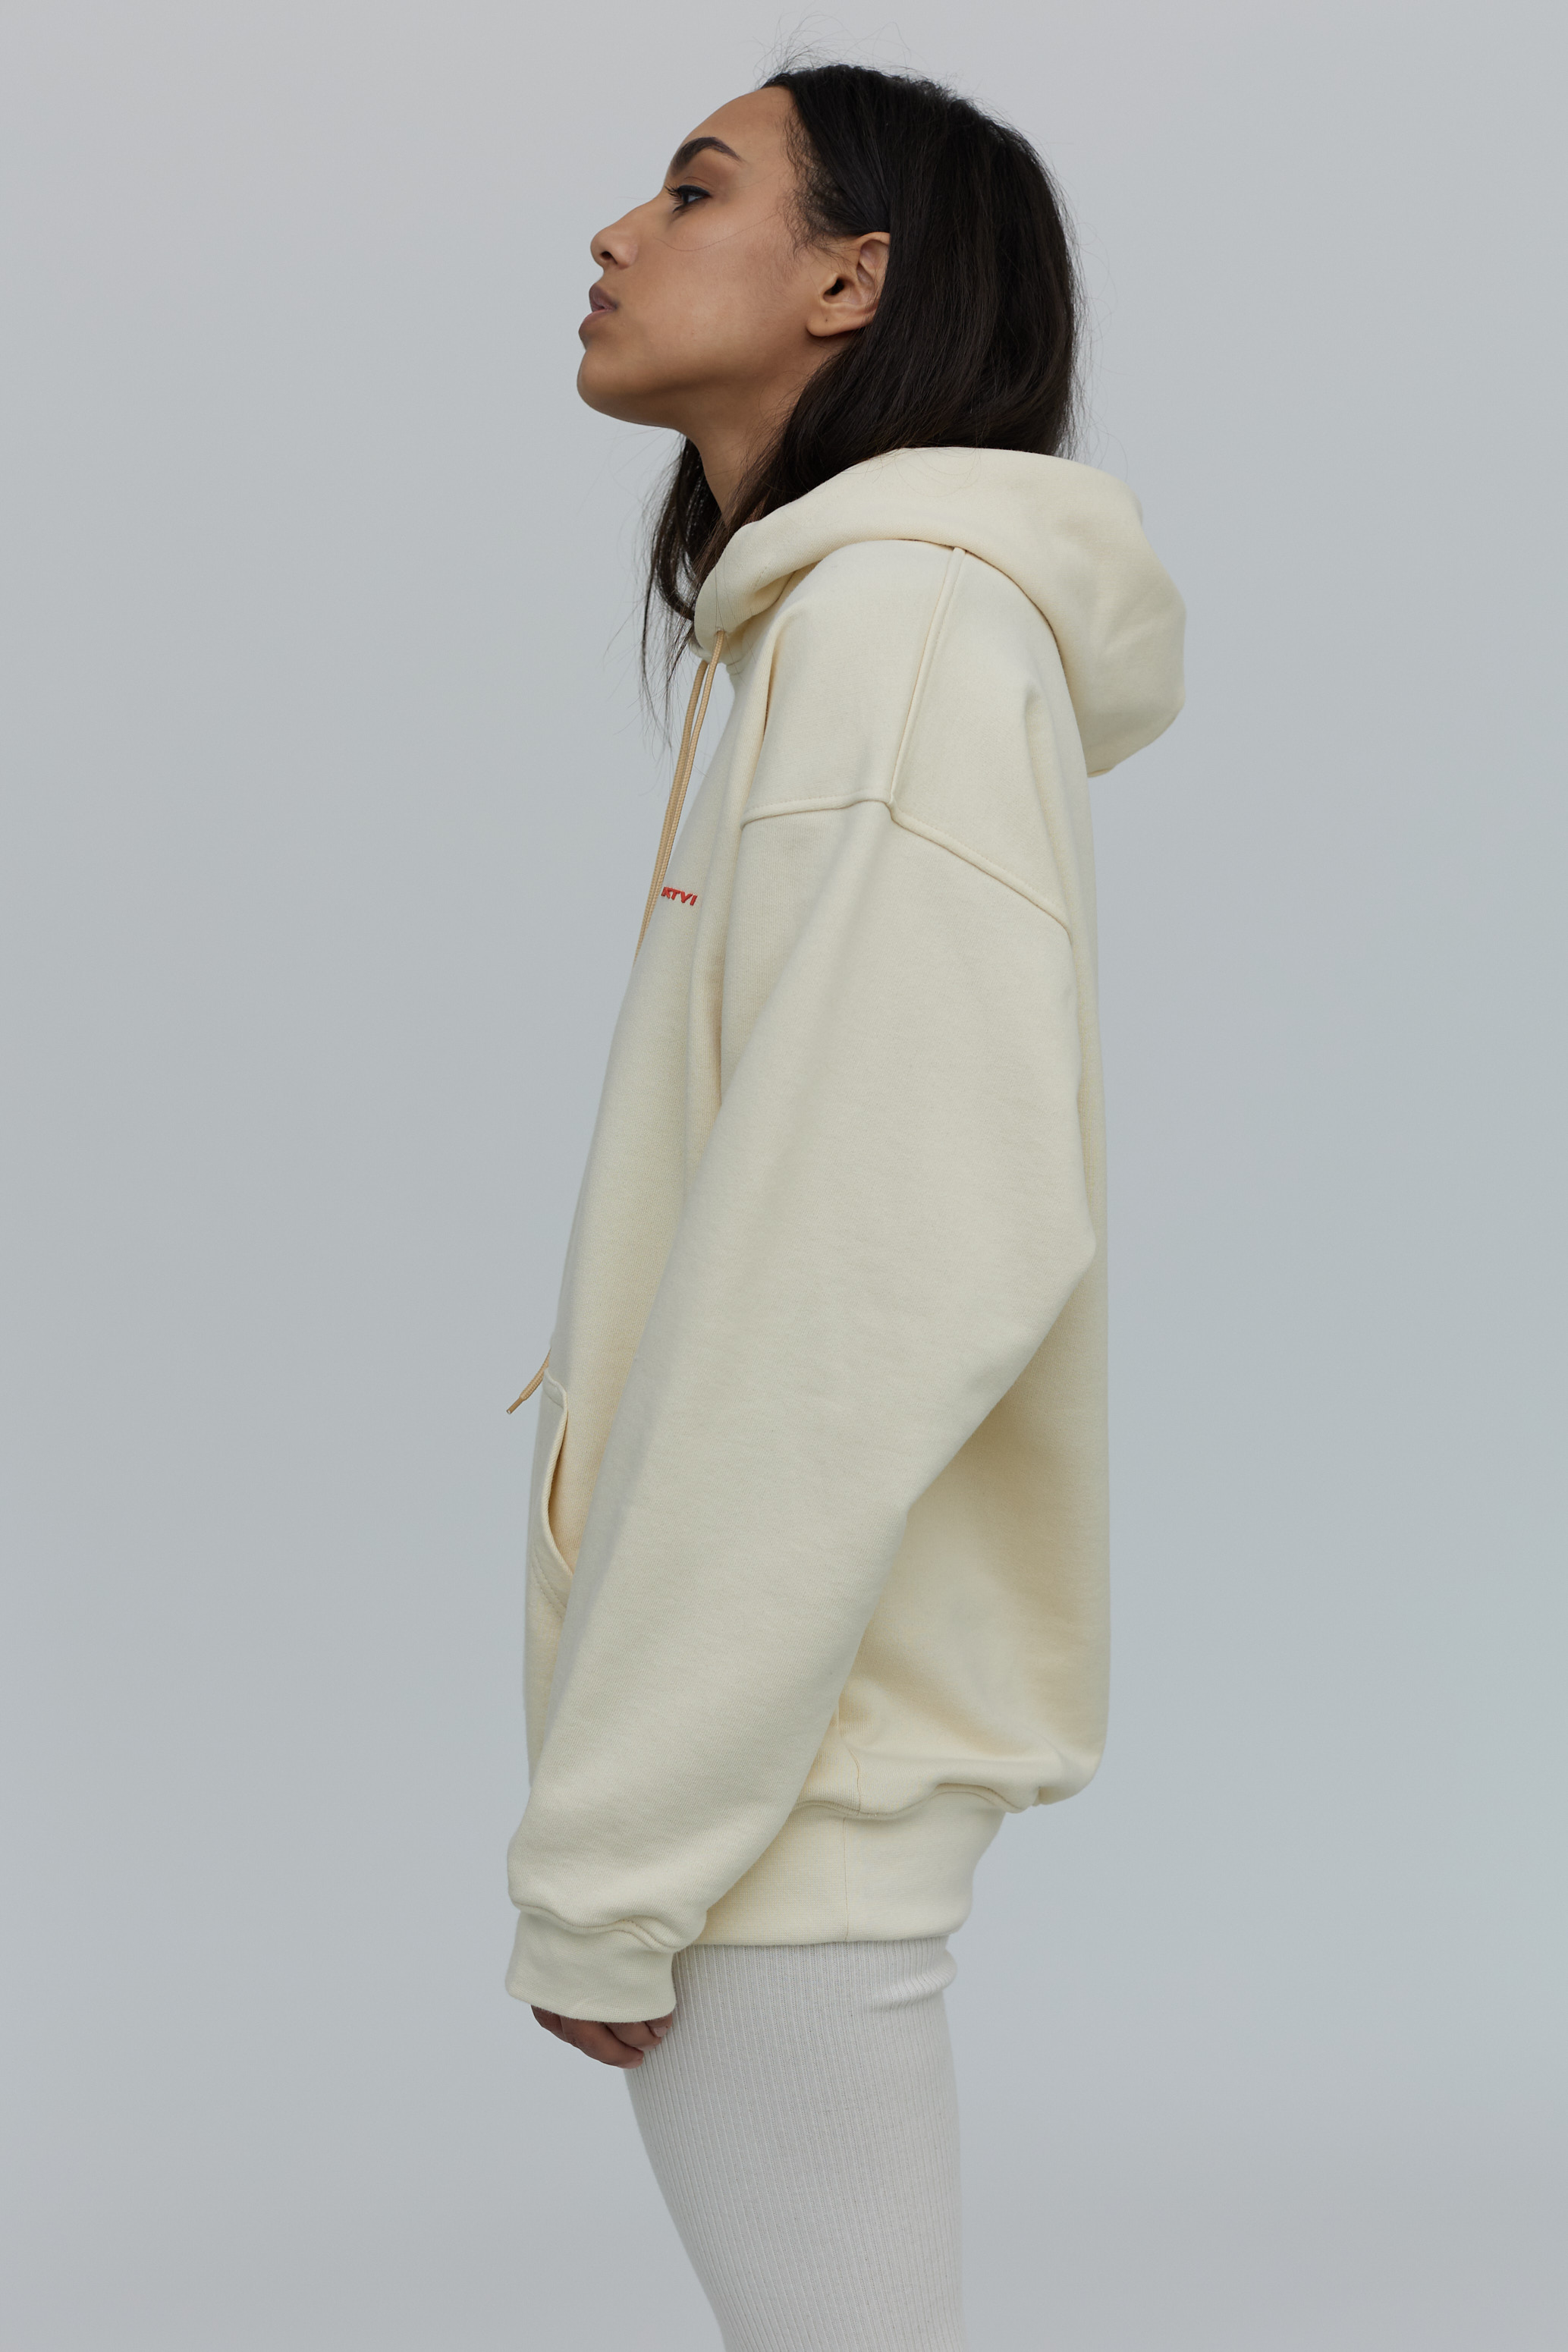 logo hoodie in vanilla color